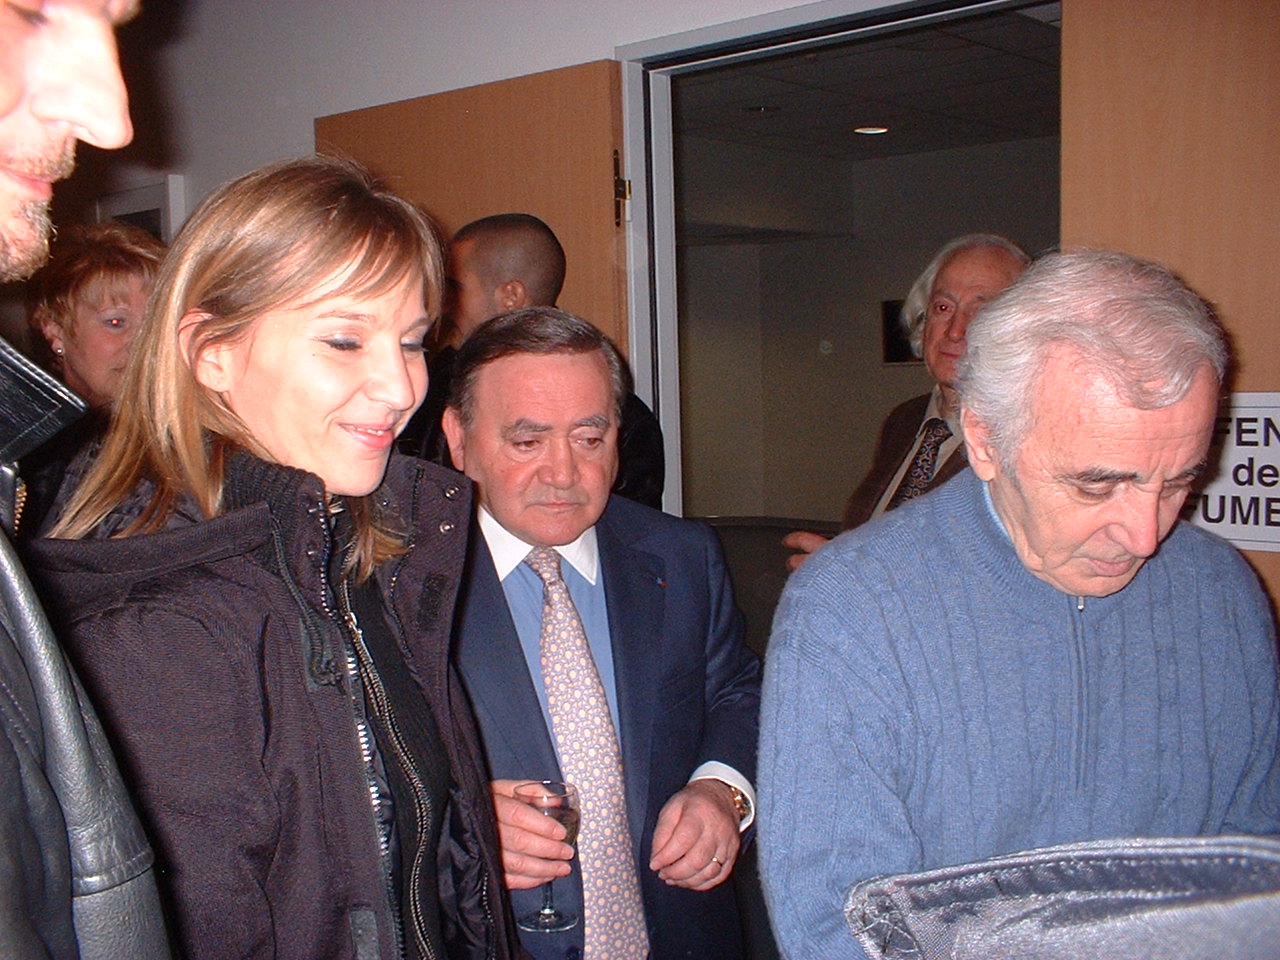 Aznavour Backstage Nice, France